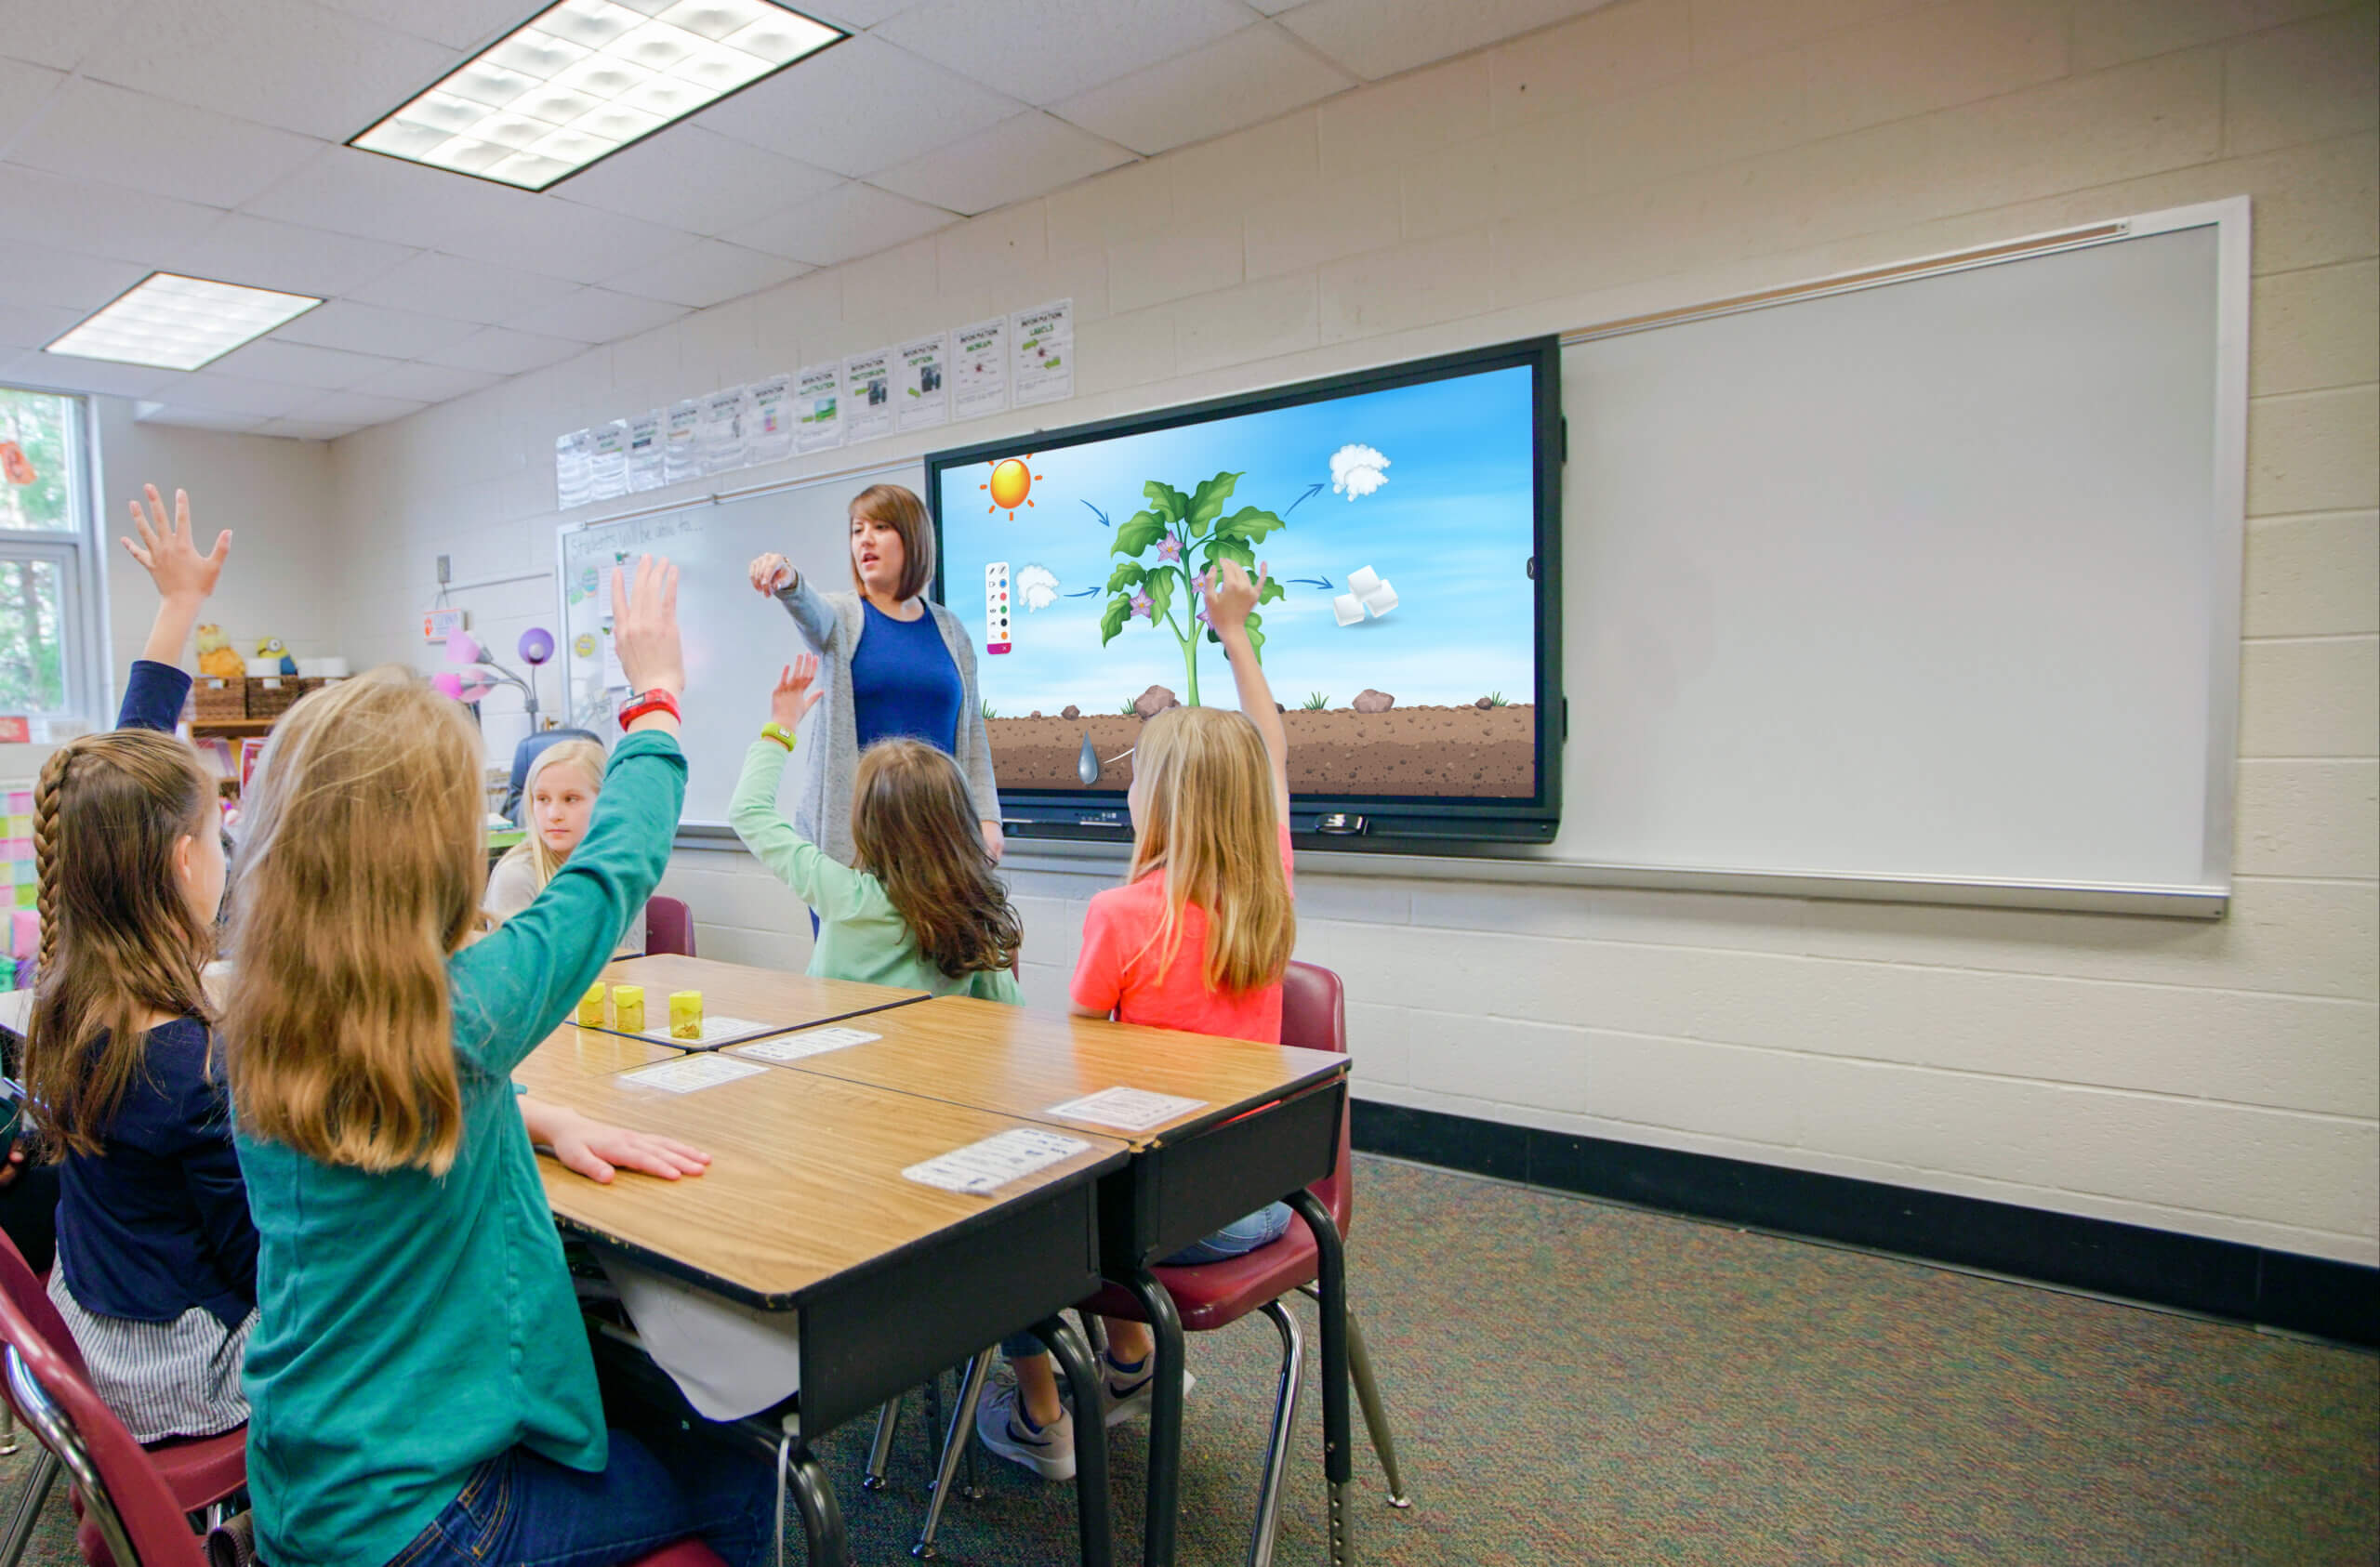 Une classe de jeunes élèves suivent le cours grâce à un écran numérique interactif Promethean.